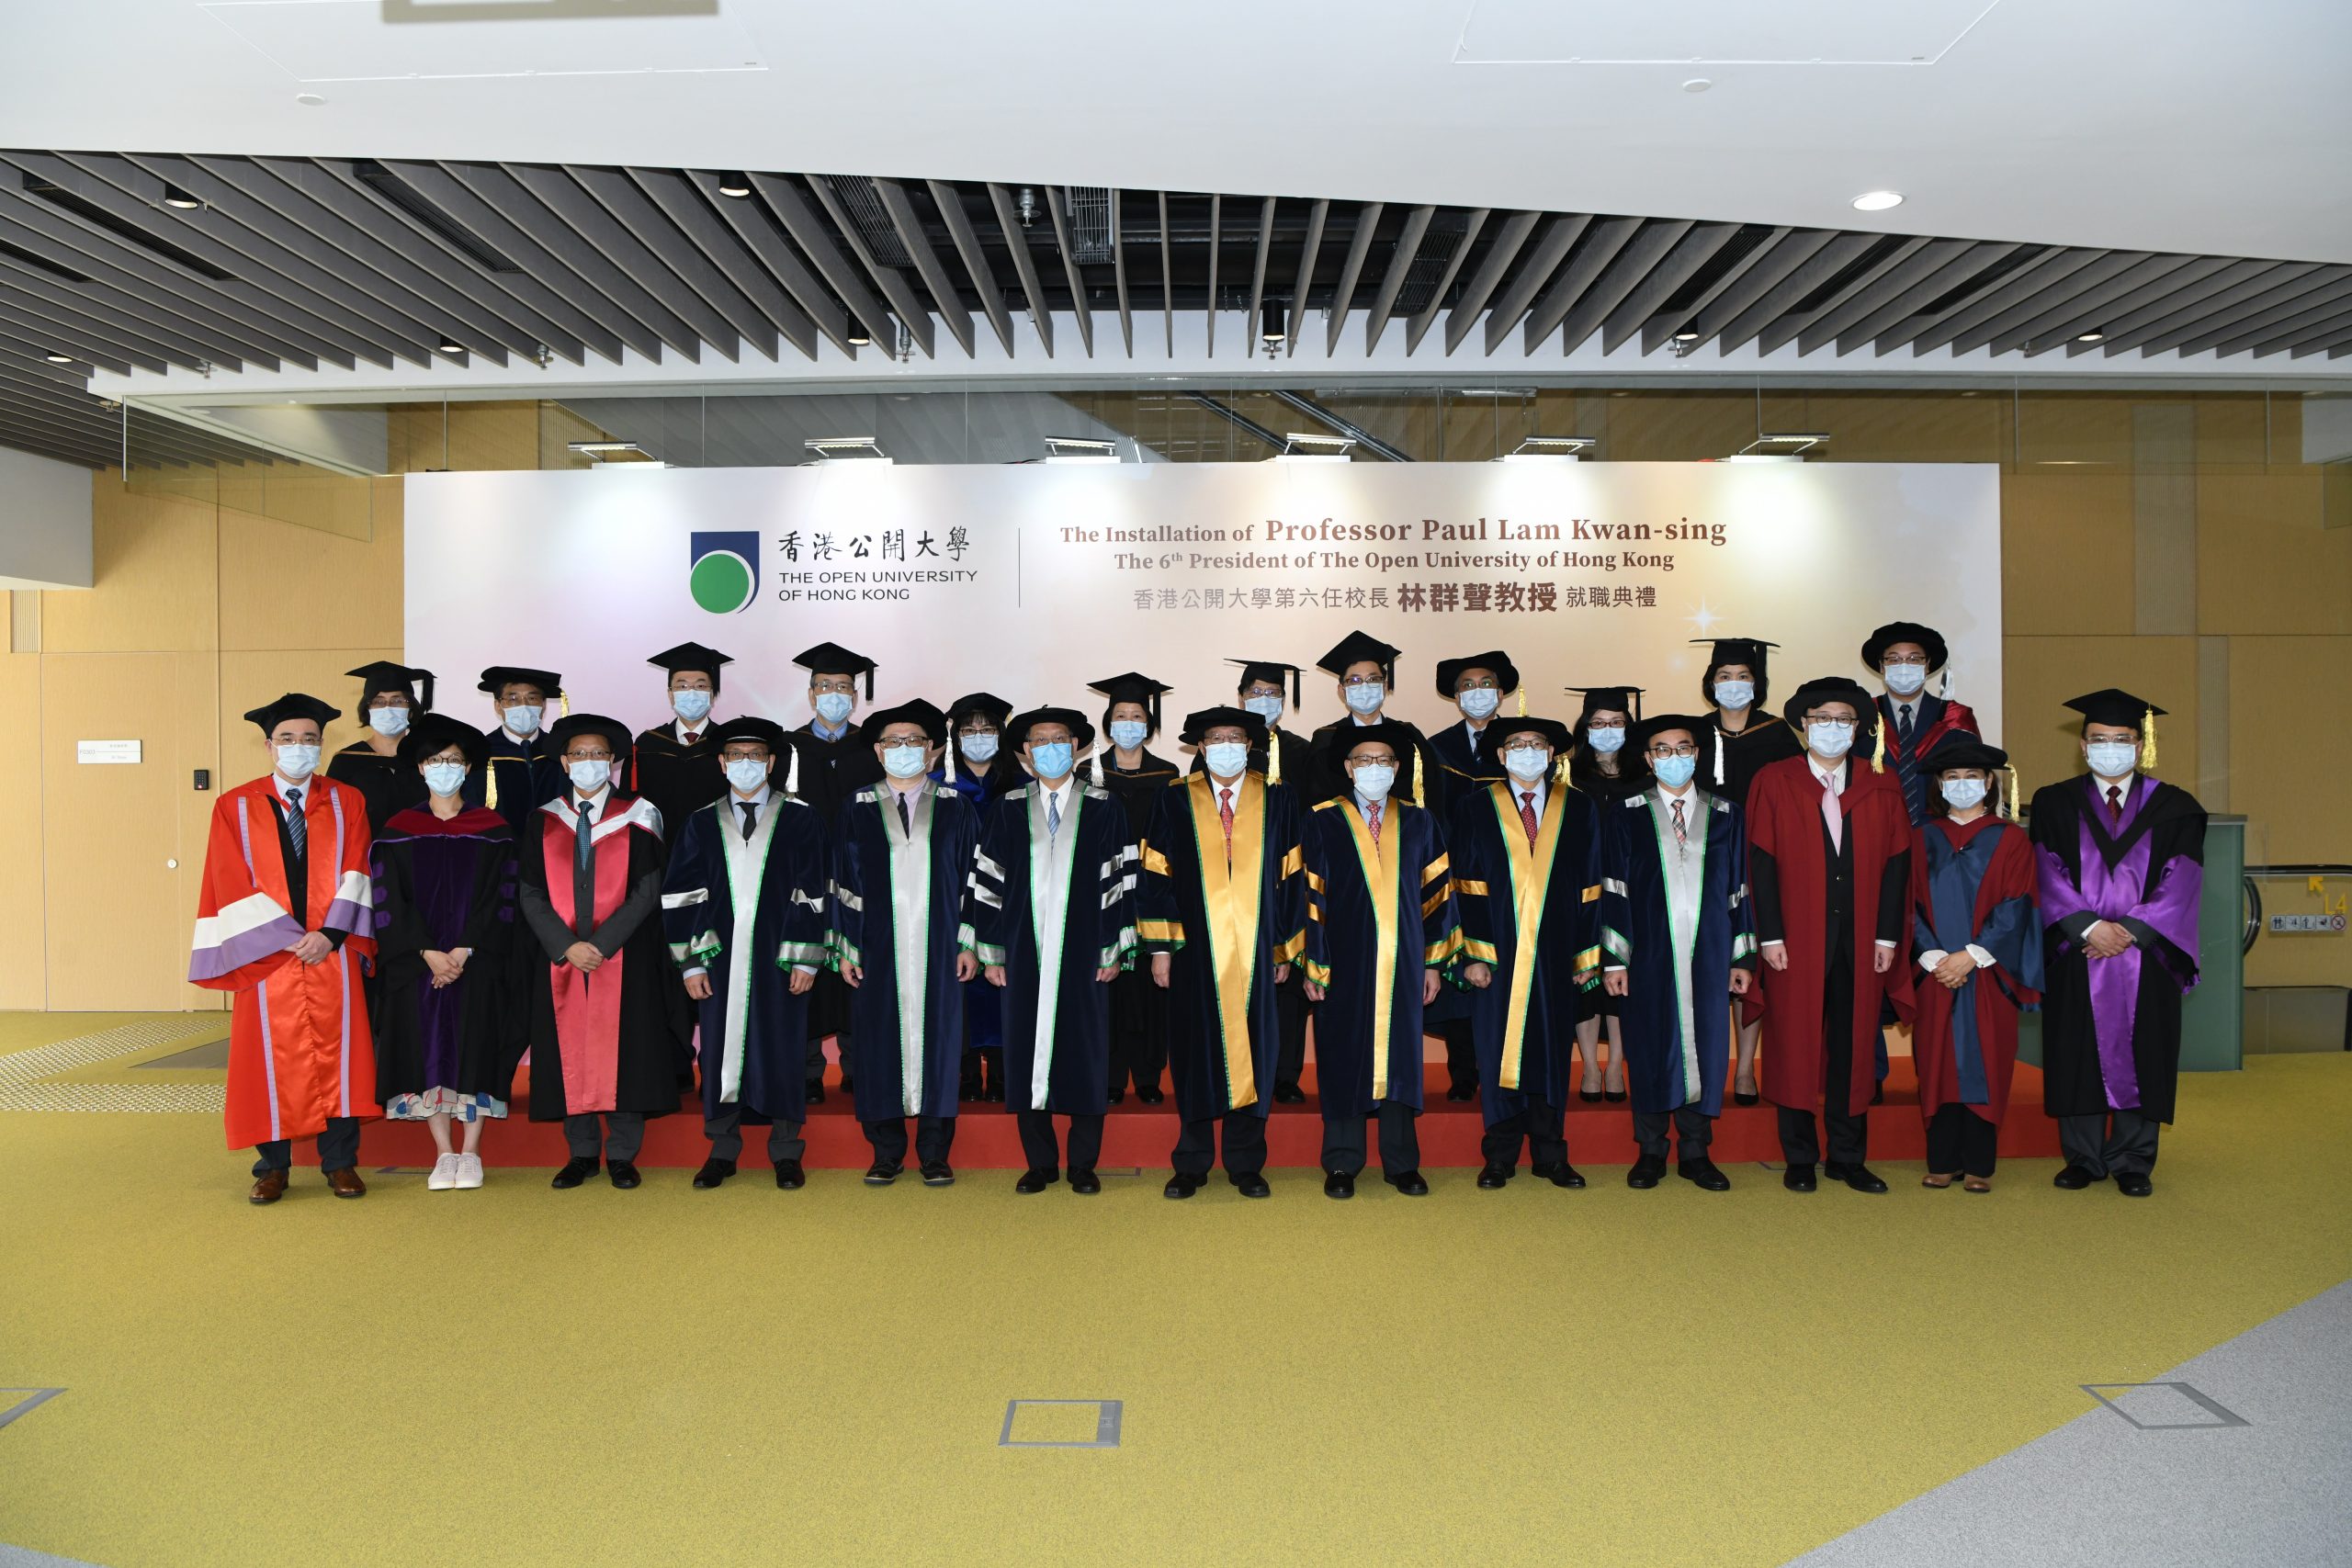 Group photo of University management.